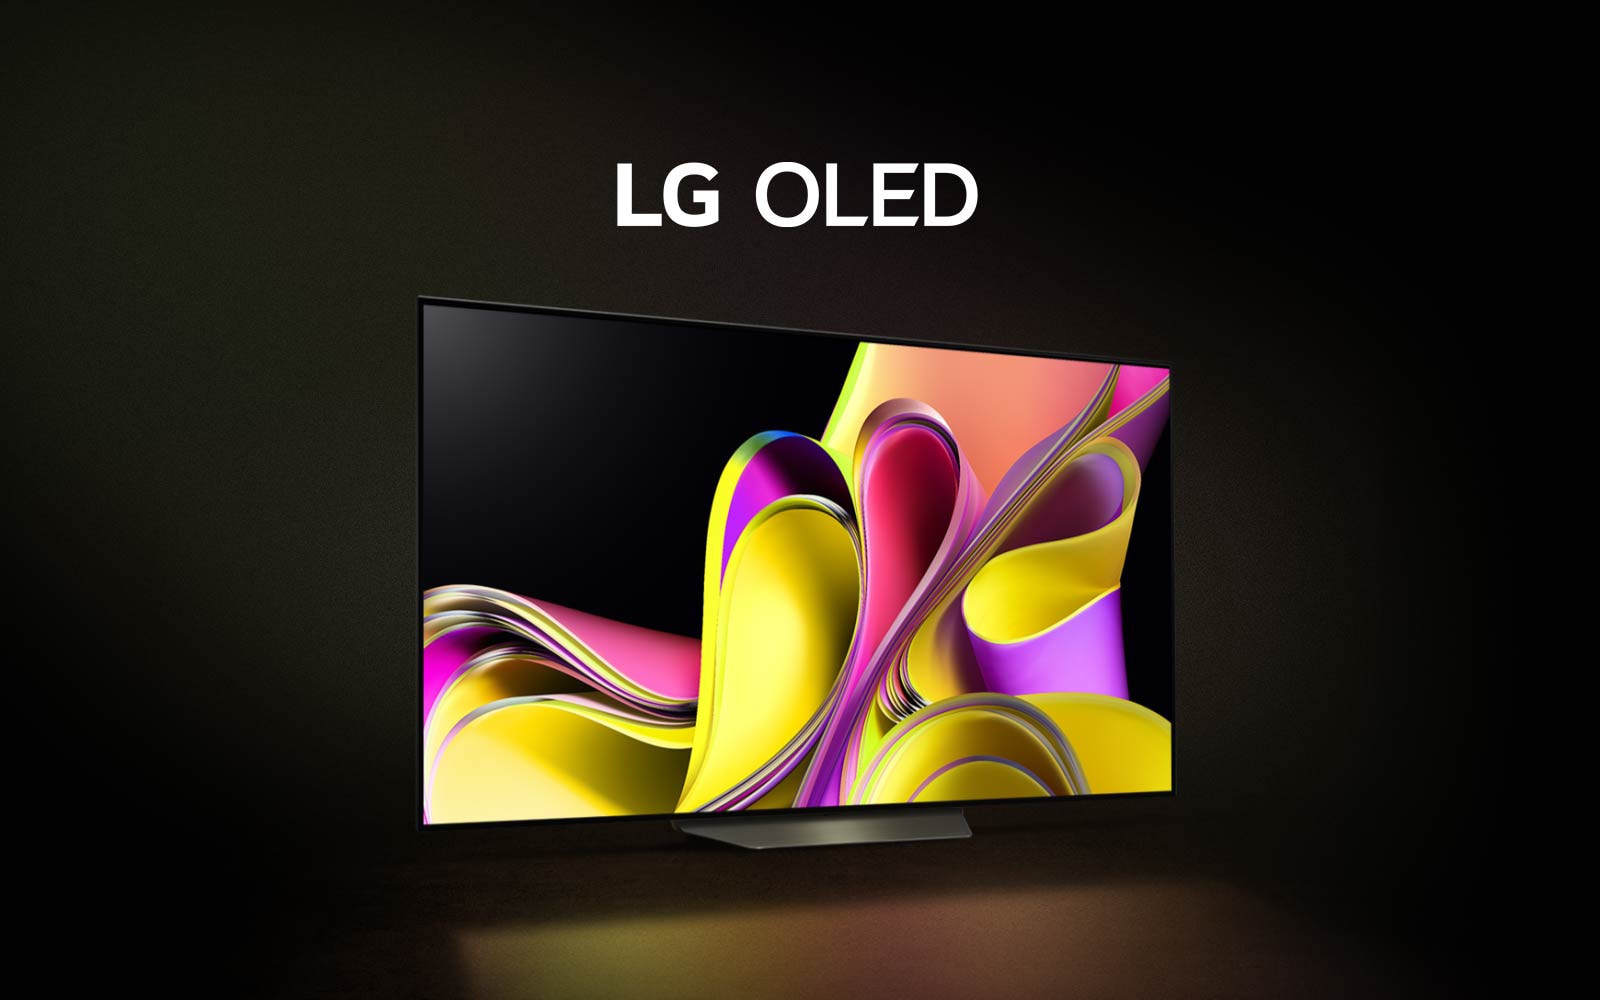 Video začíná s černým pozadím a postupně se na obrazovce objeví barevné abstraktní dílo LG OLED B3. Televizor se přesune na místo a na displeji se objeví bílý nápis LG OLED.